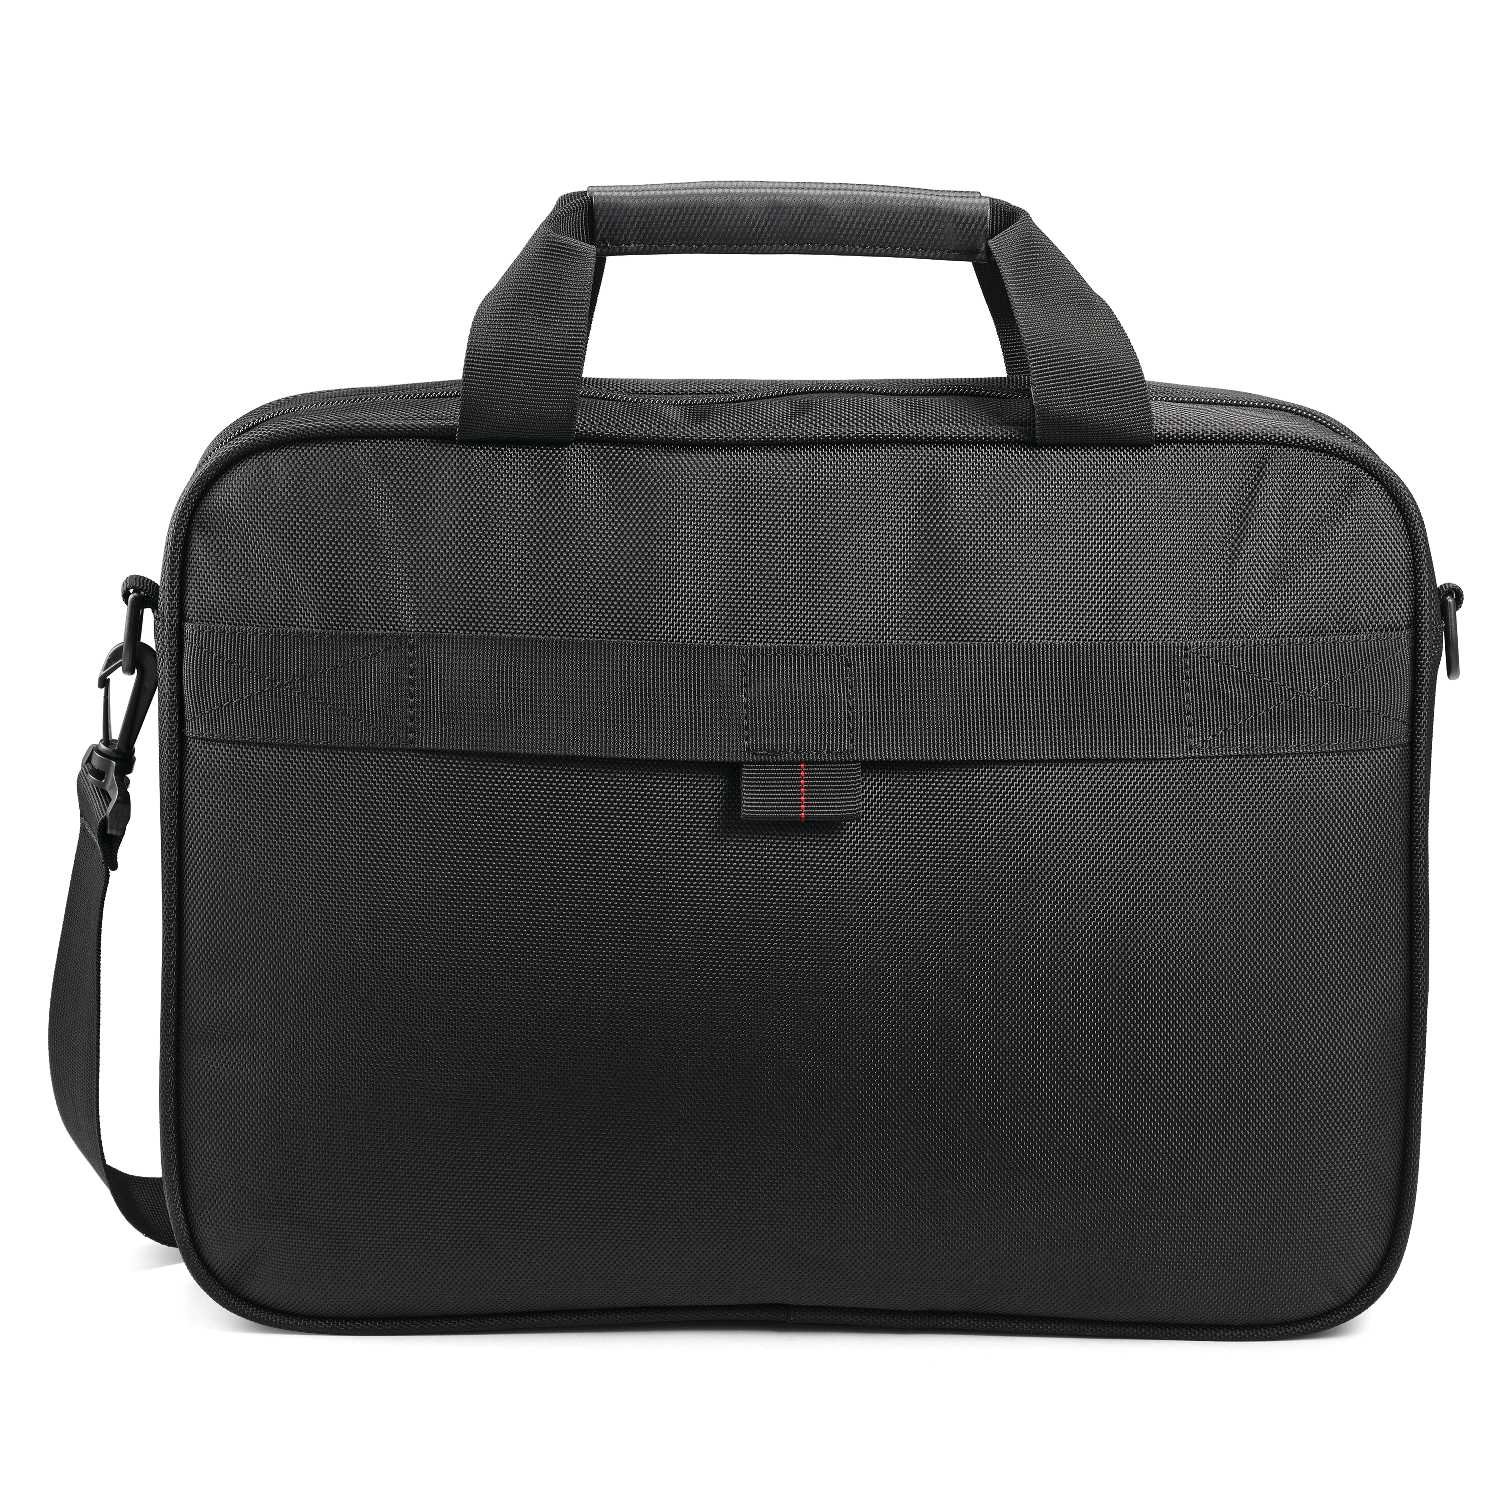 Samsonite Xenon 3.0 Laptop Shuttle 15 Bag Black One Size for sale online | eBay